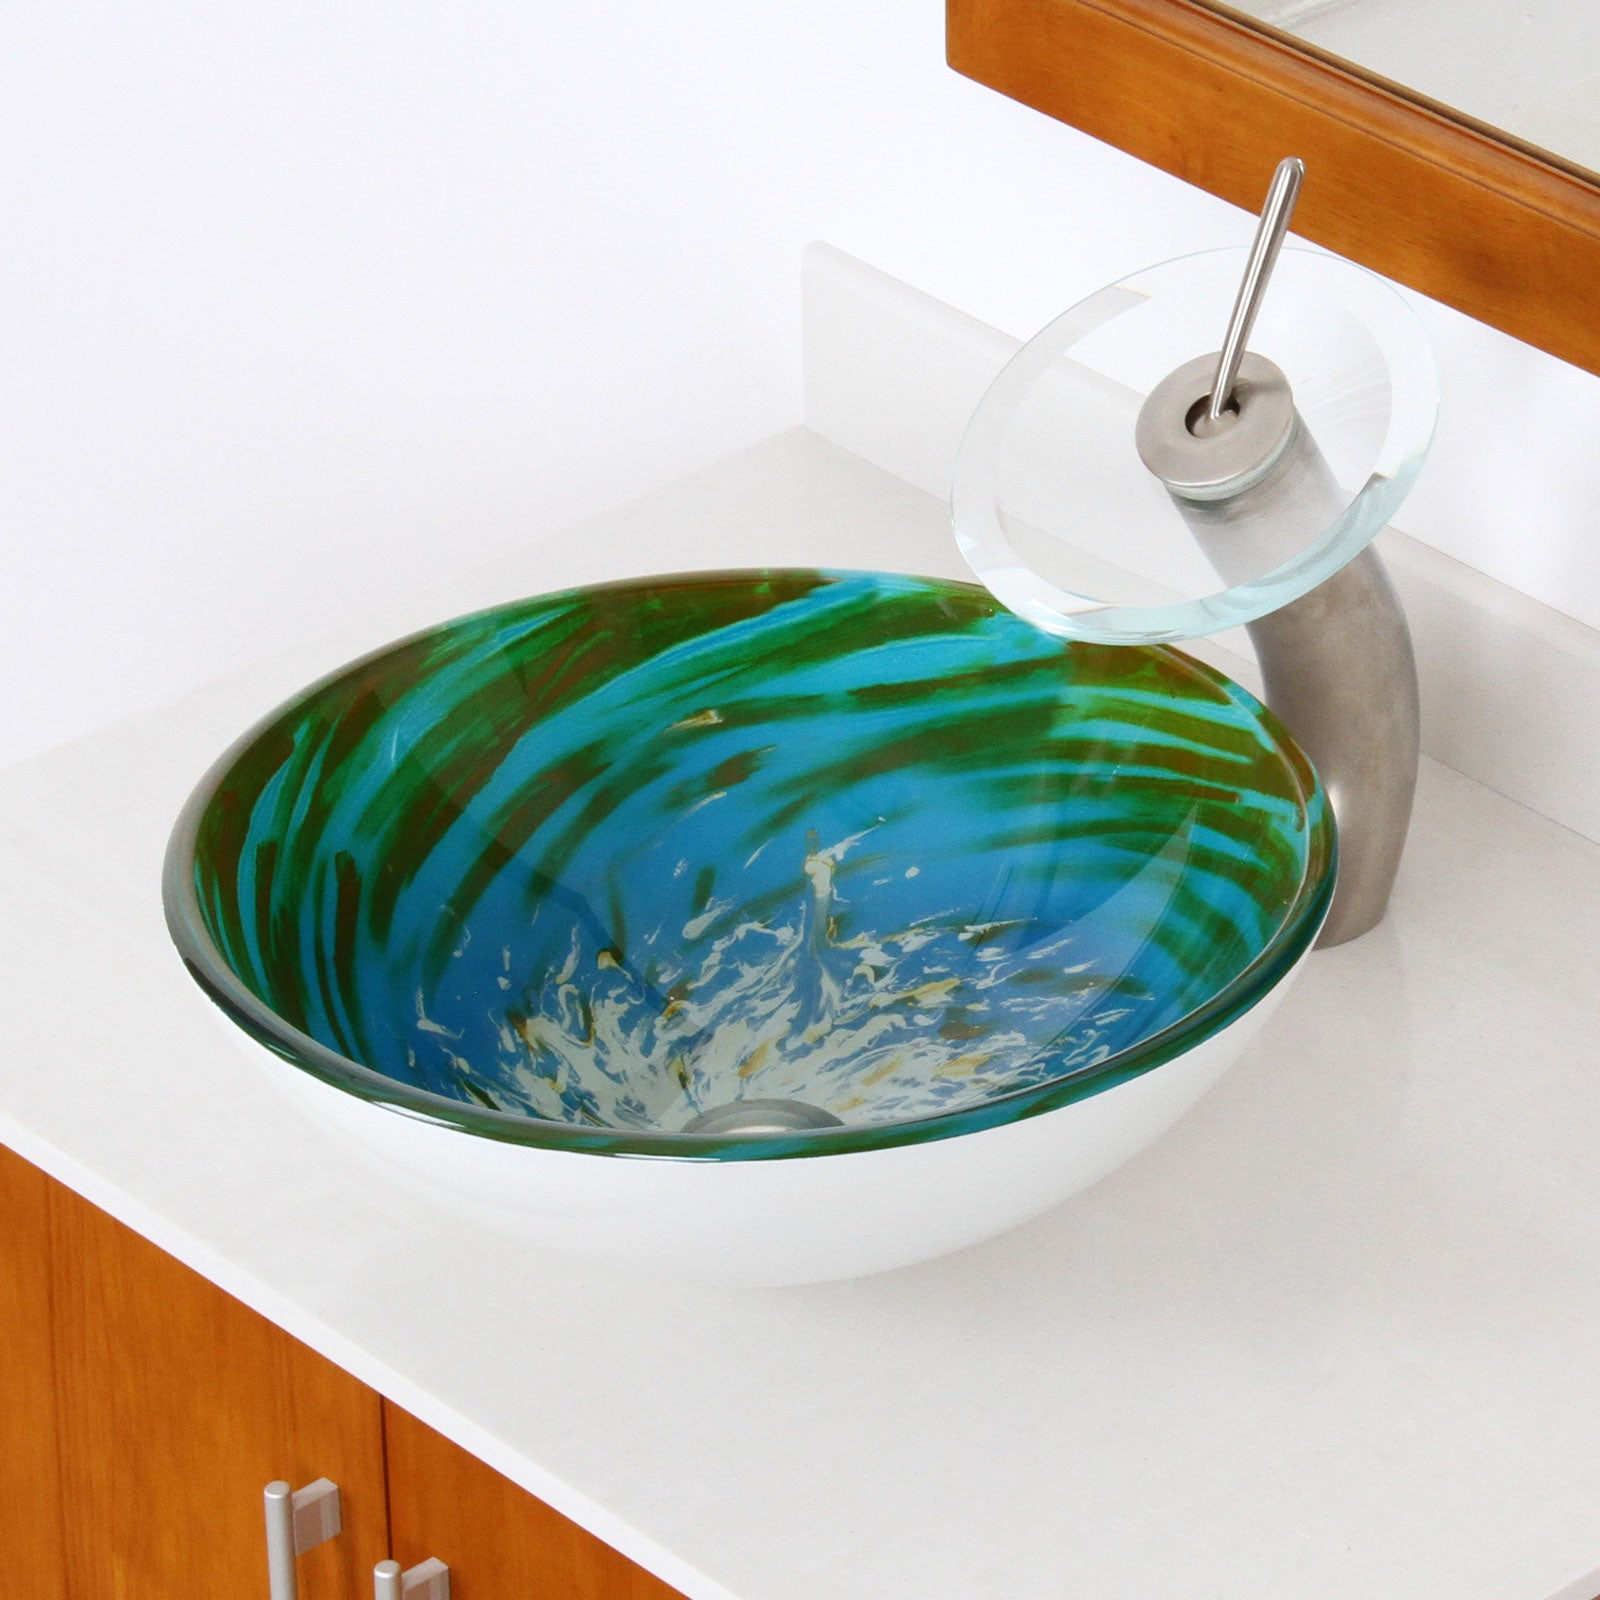 ELITE Modern Design Tempered Glass Bathroom Vessel Sink 1405